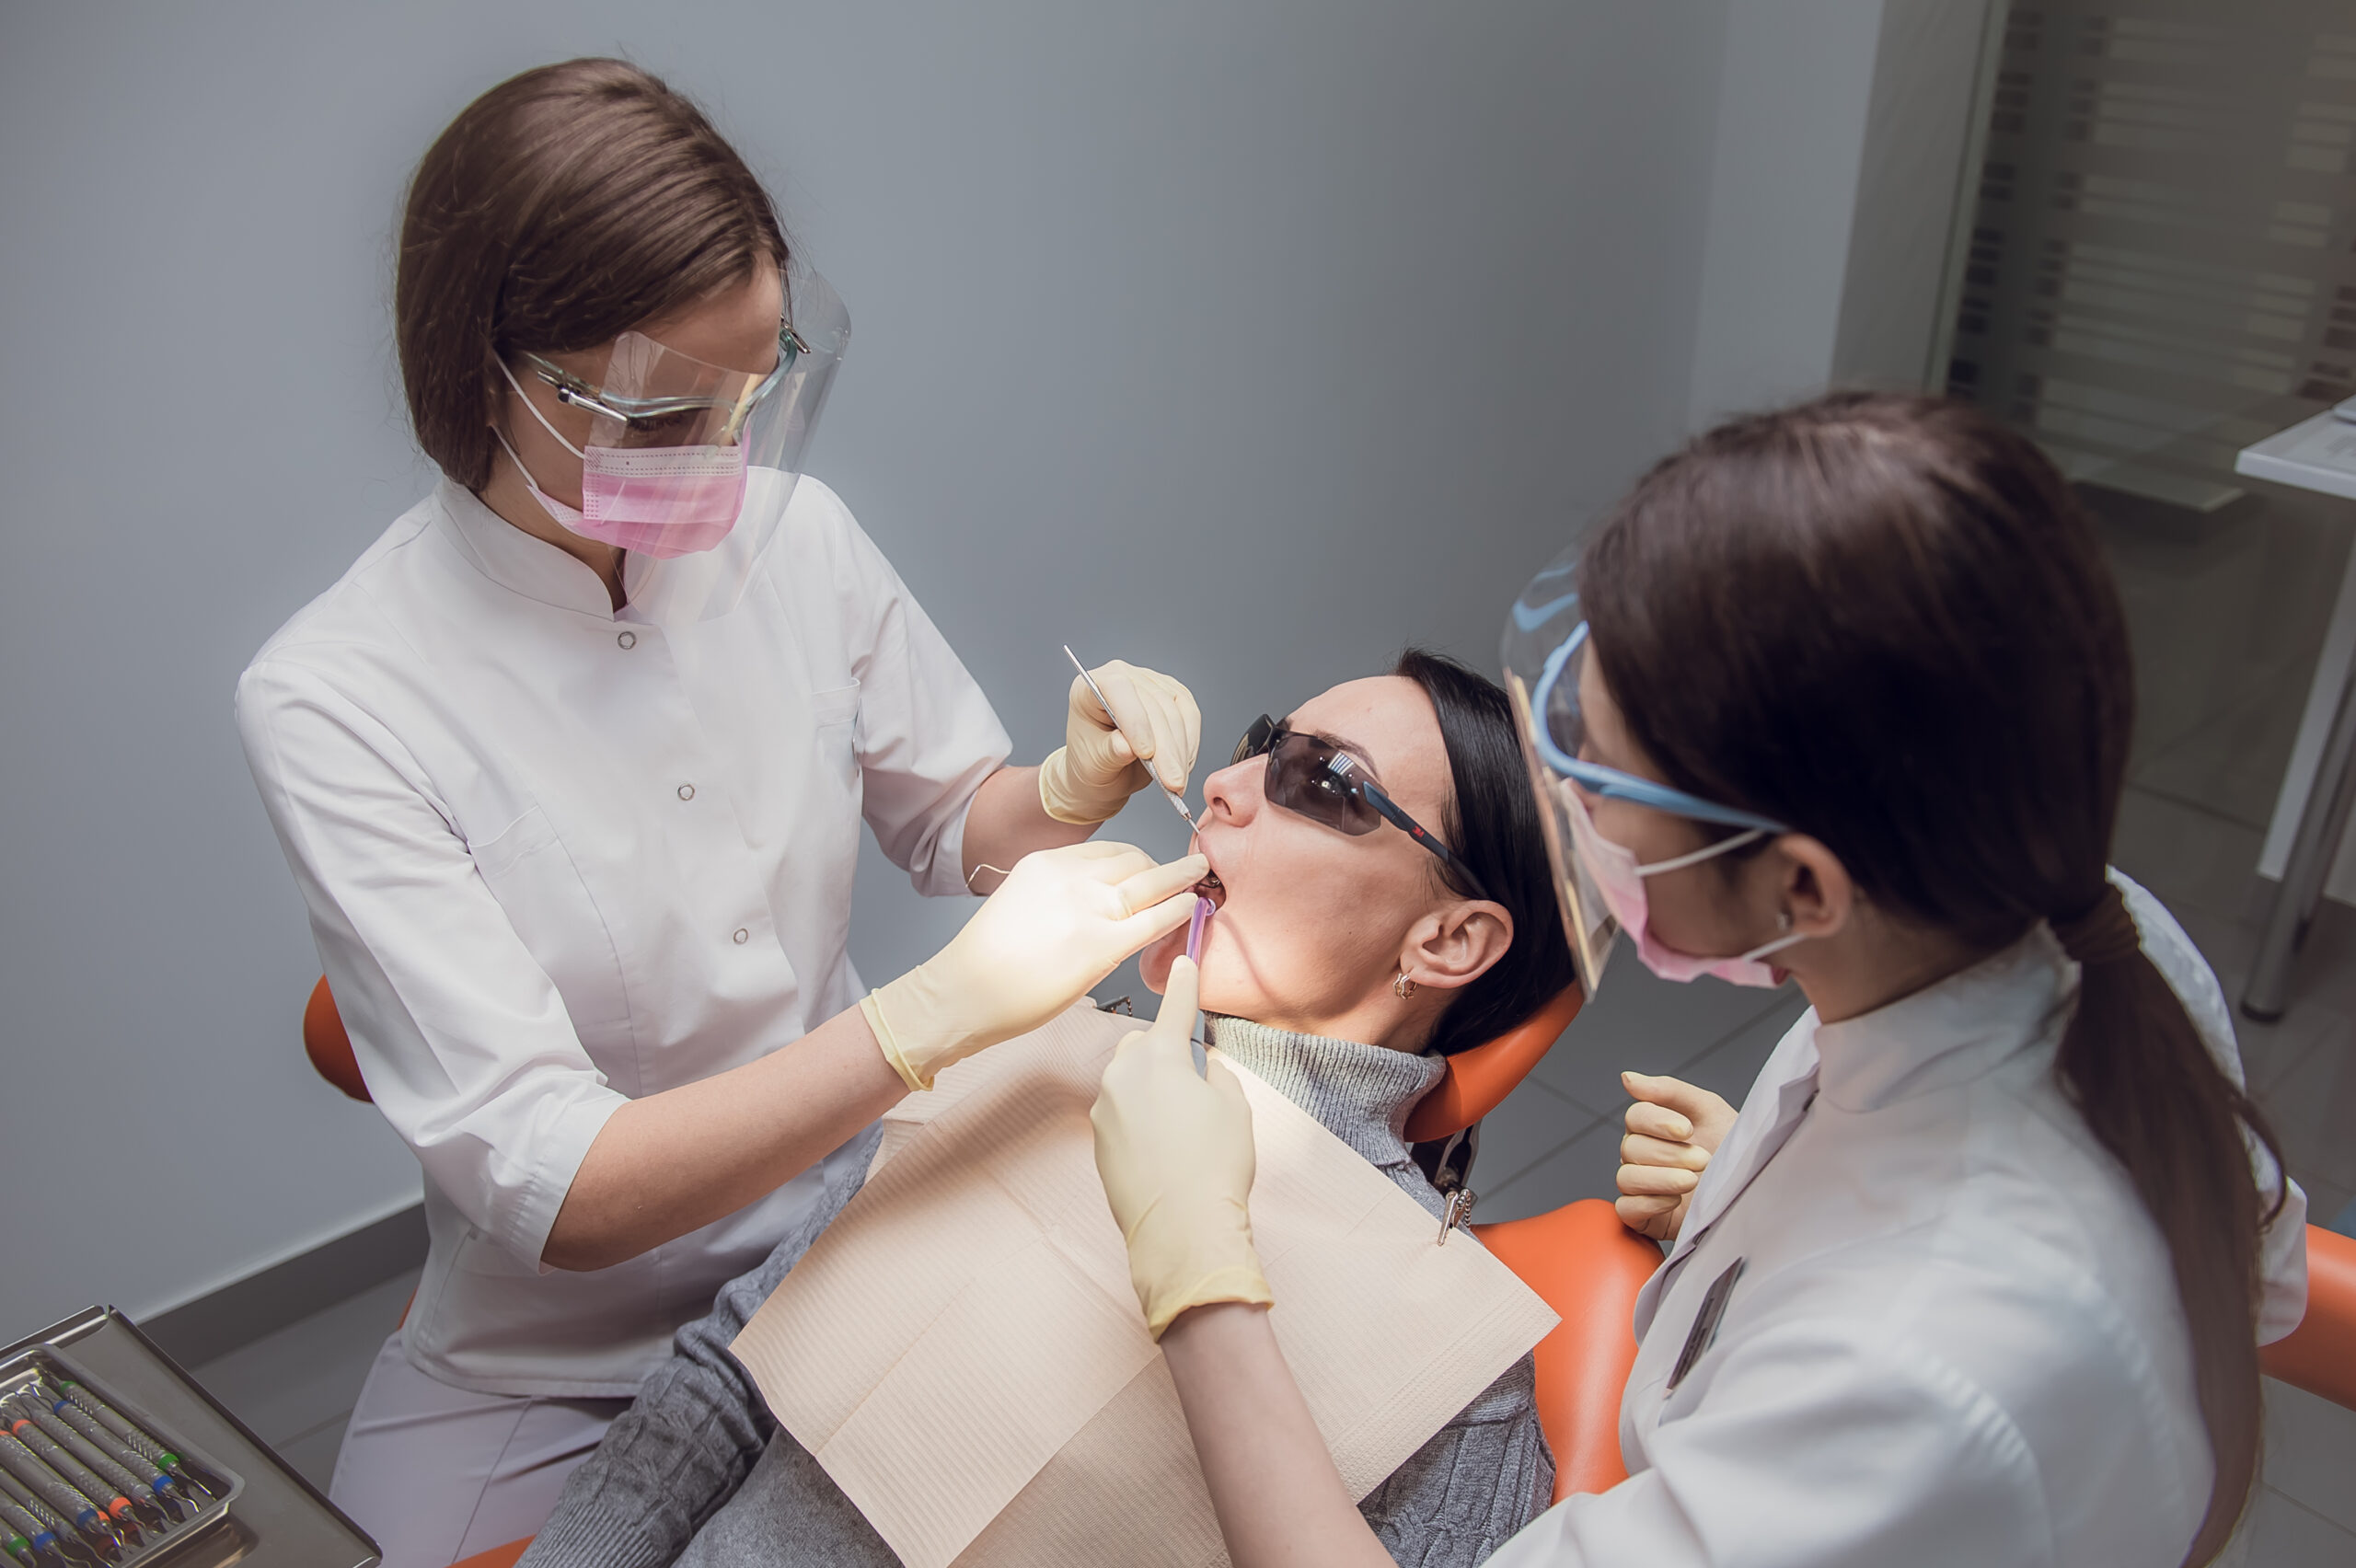 Examination at the Perio Center periodontal center in Lviv, Ukraine